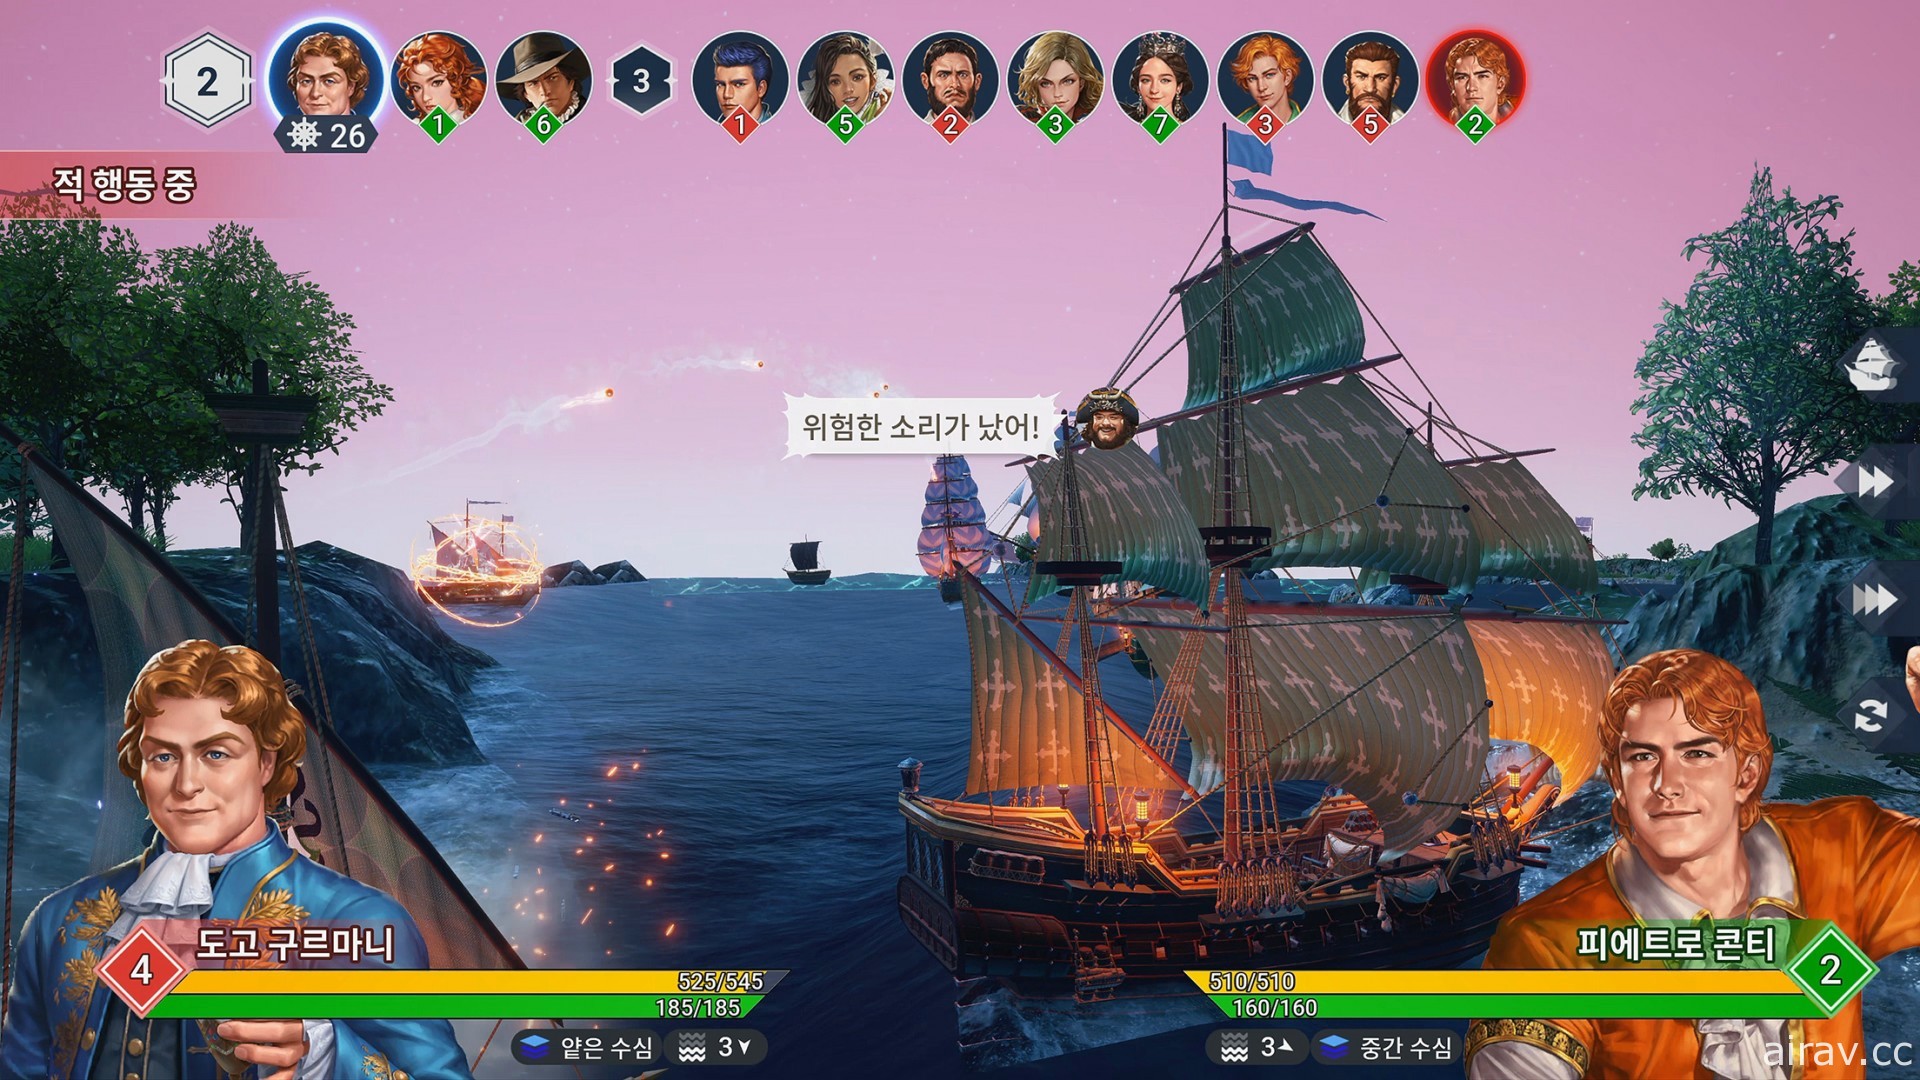 《大航海時代 Origin》宣布 1 月 28 日於韓國展開封測 公開實機宣傳影片